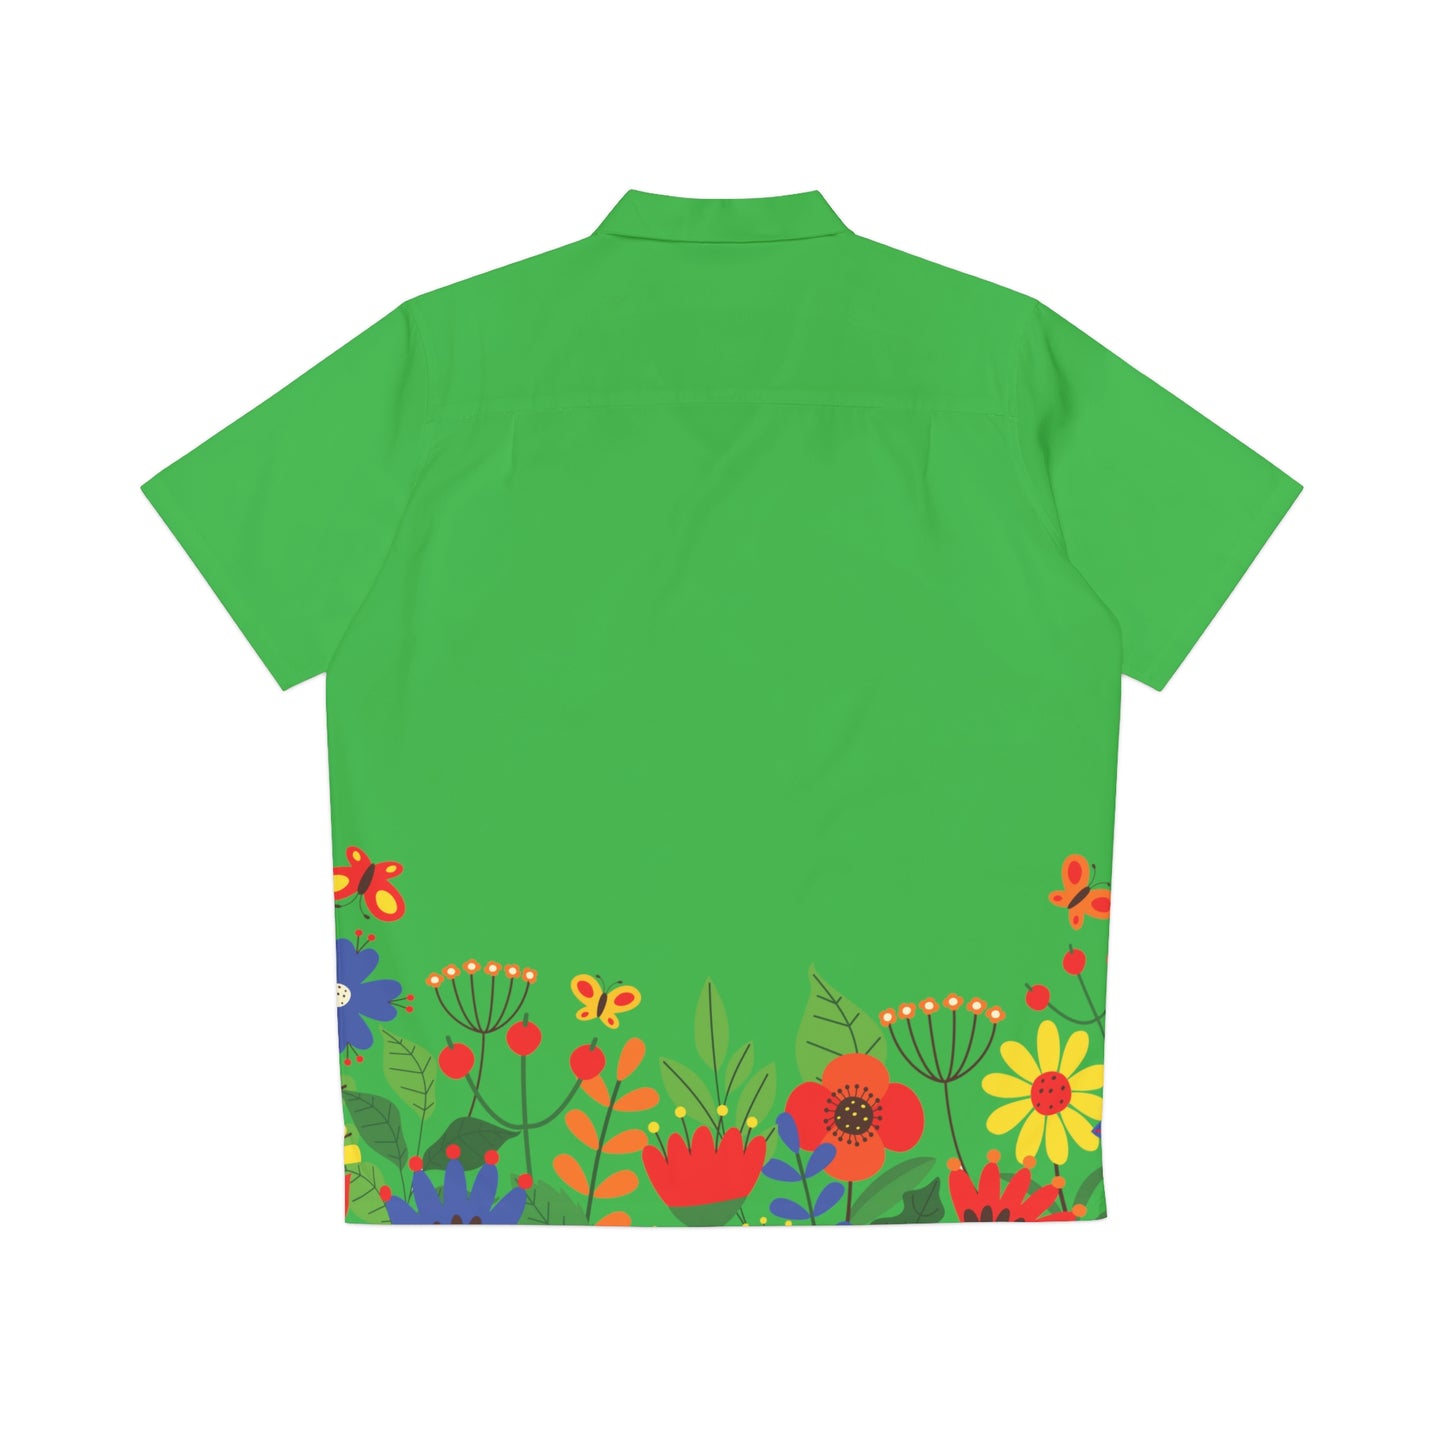 Bright Summer flowers - Lime Green 21C12E - Men's Hawaiian Shirt